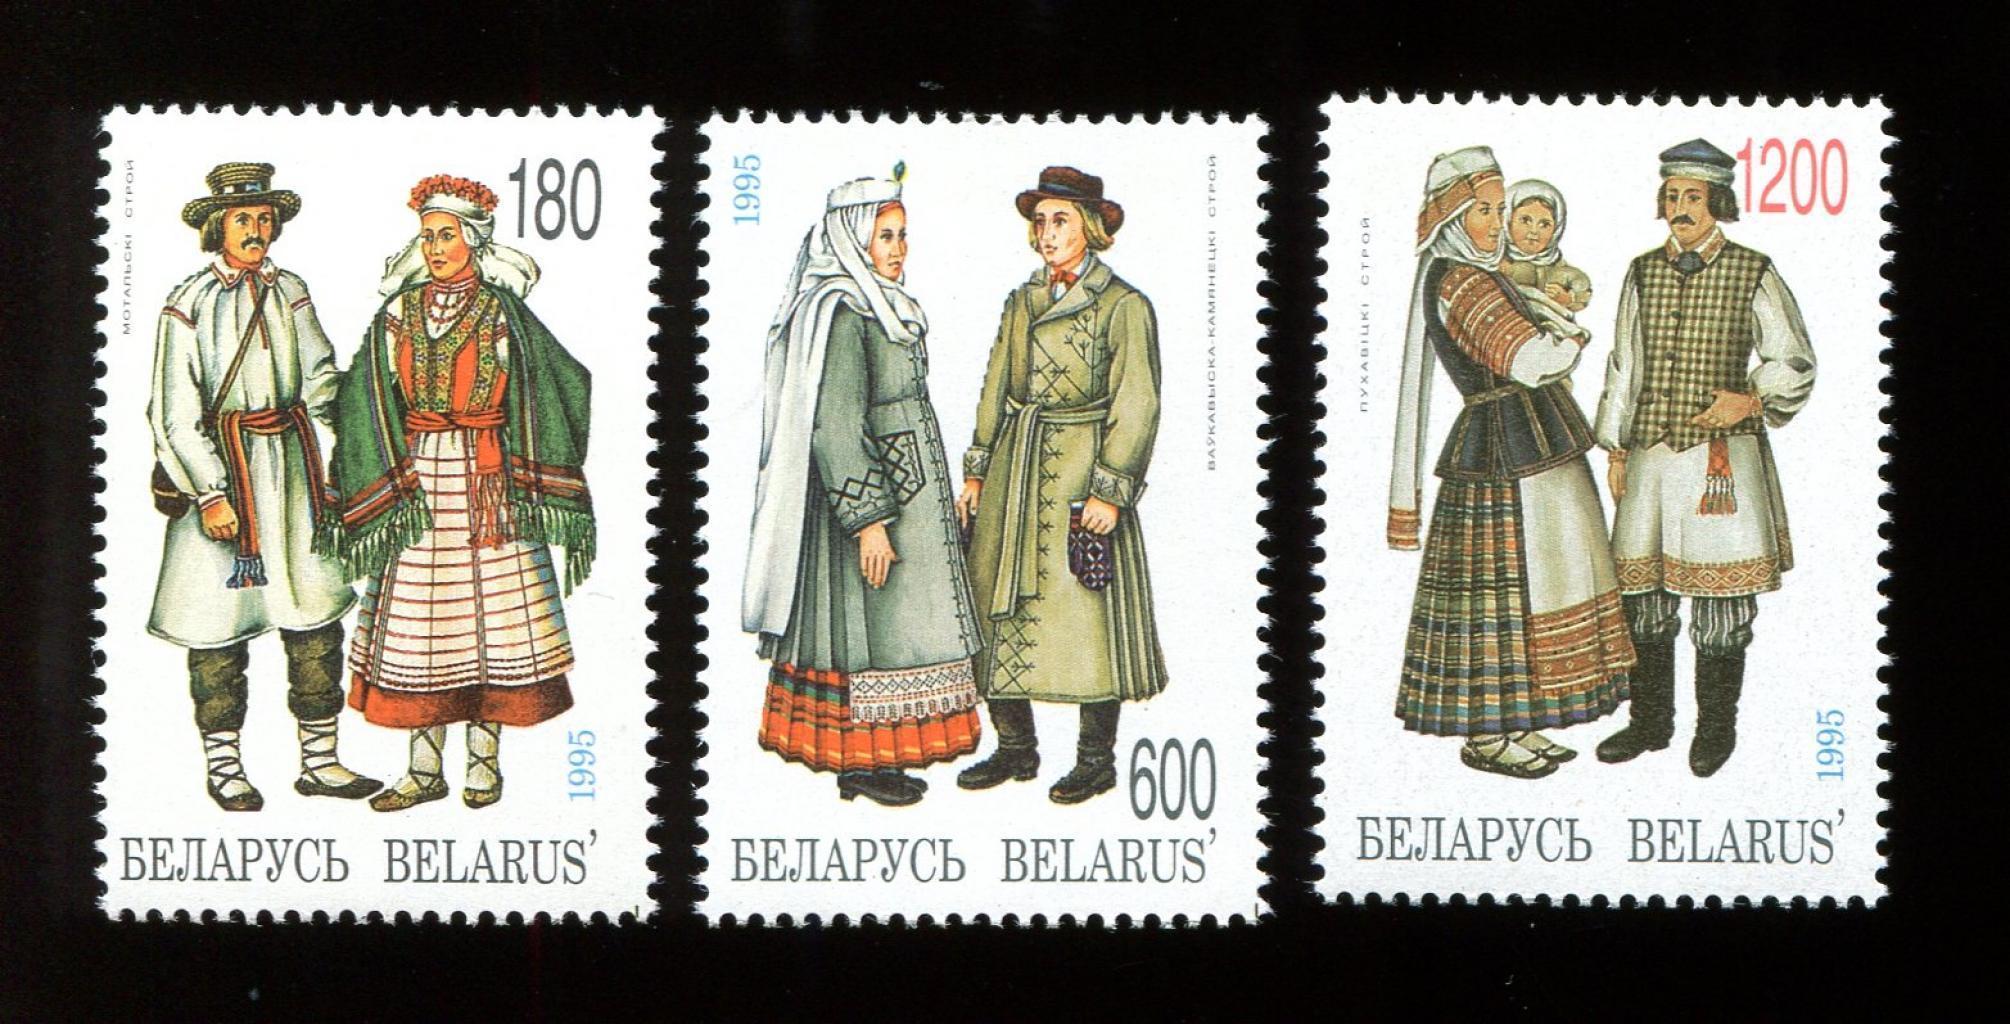 Почтовая марка Беларуси костюмы